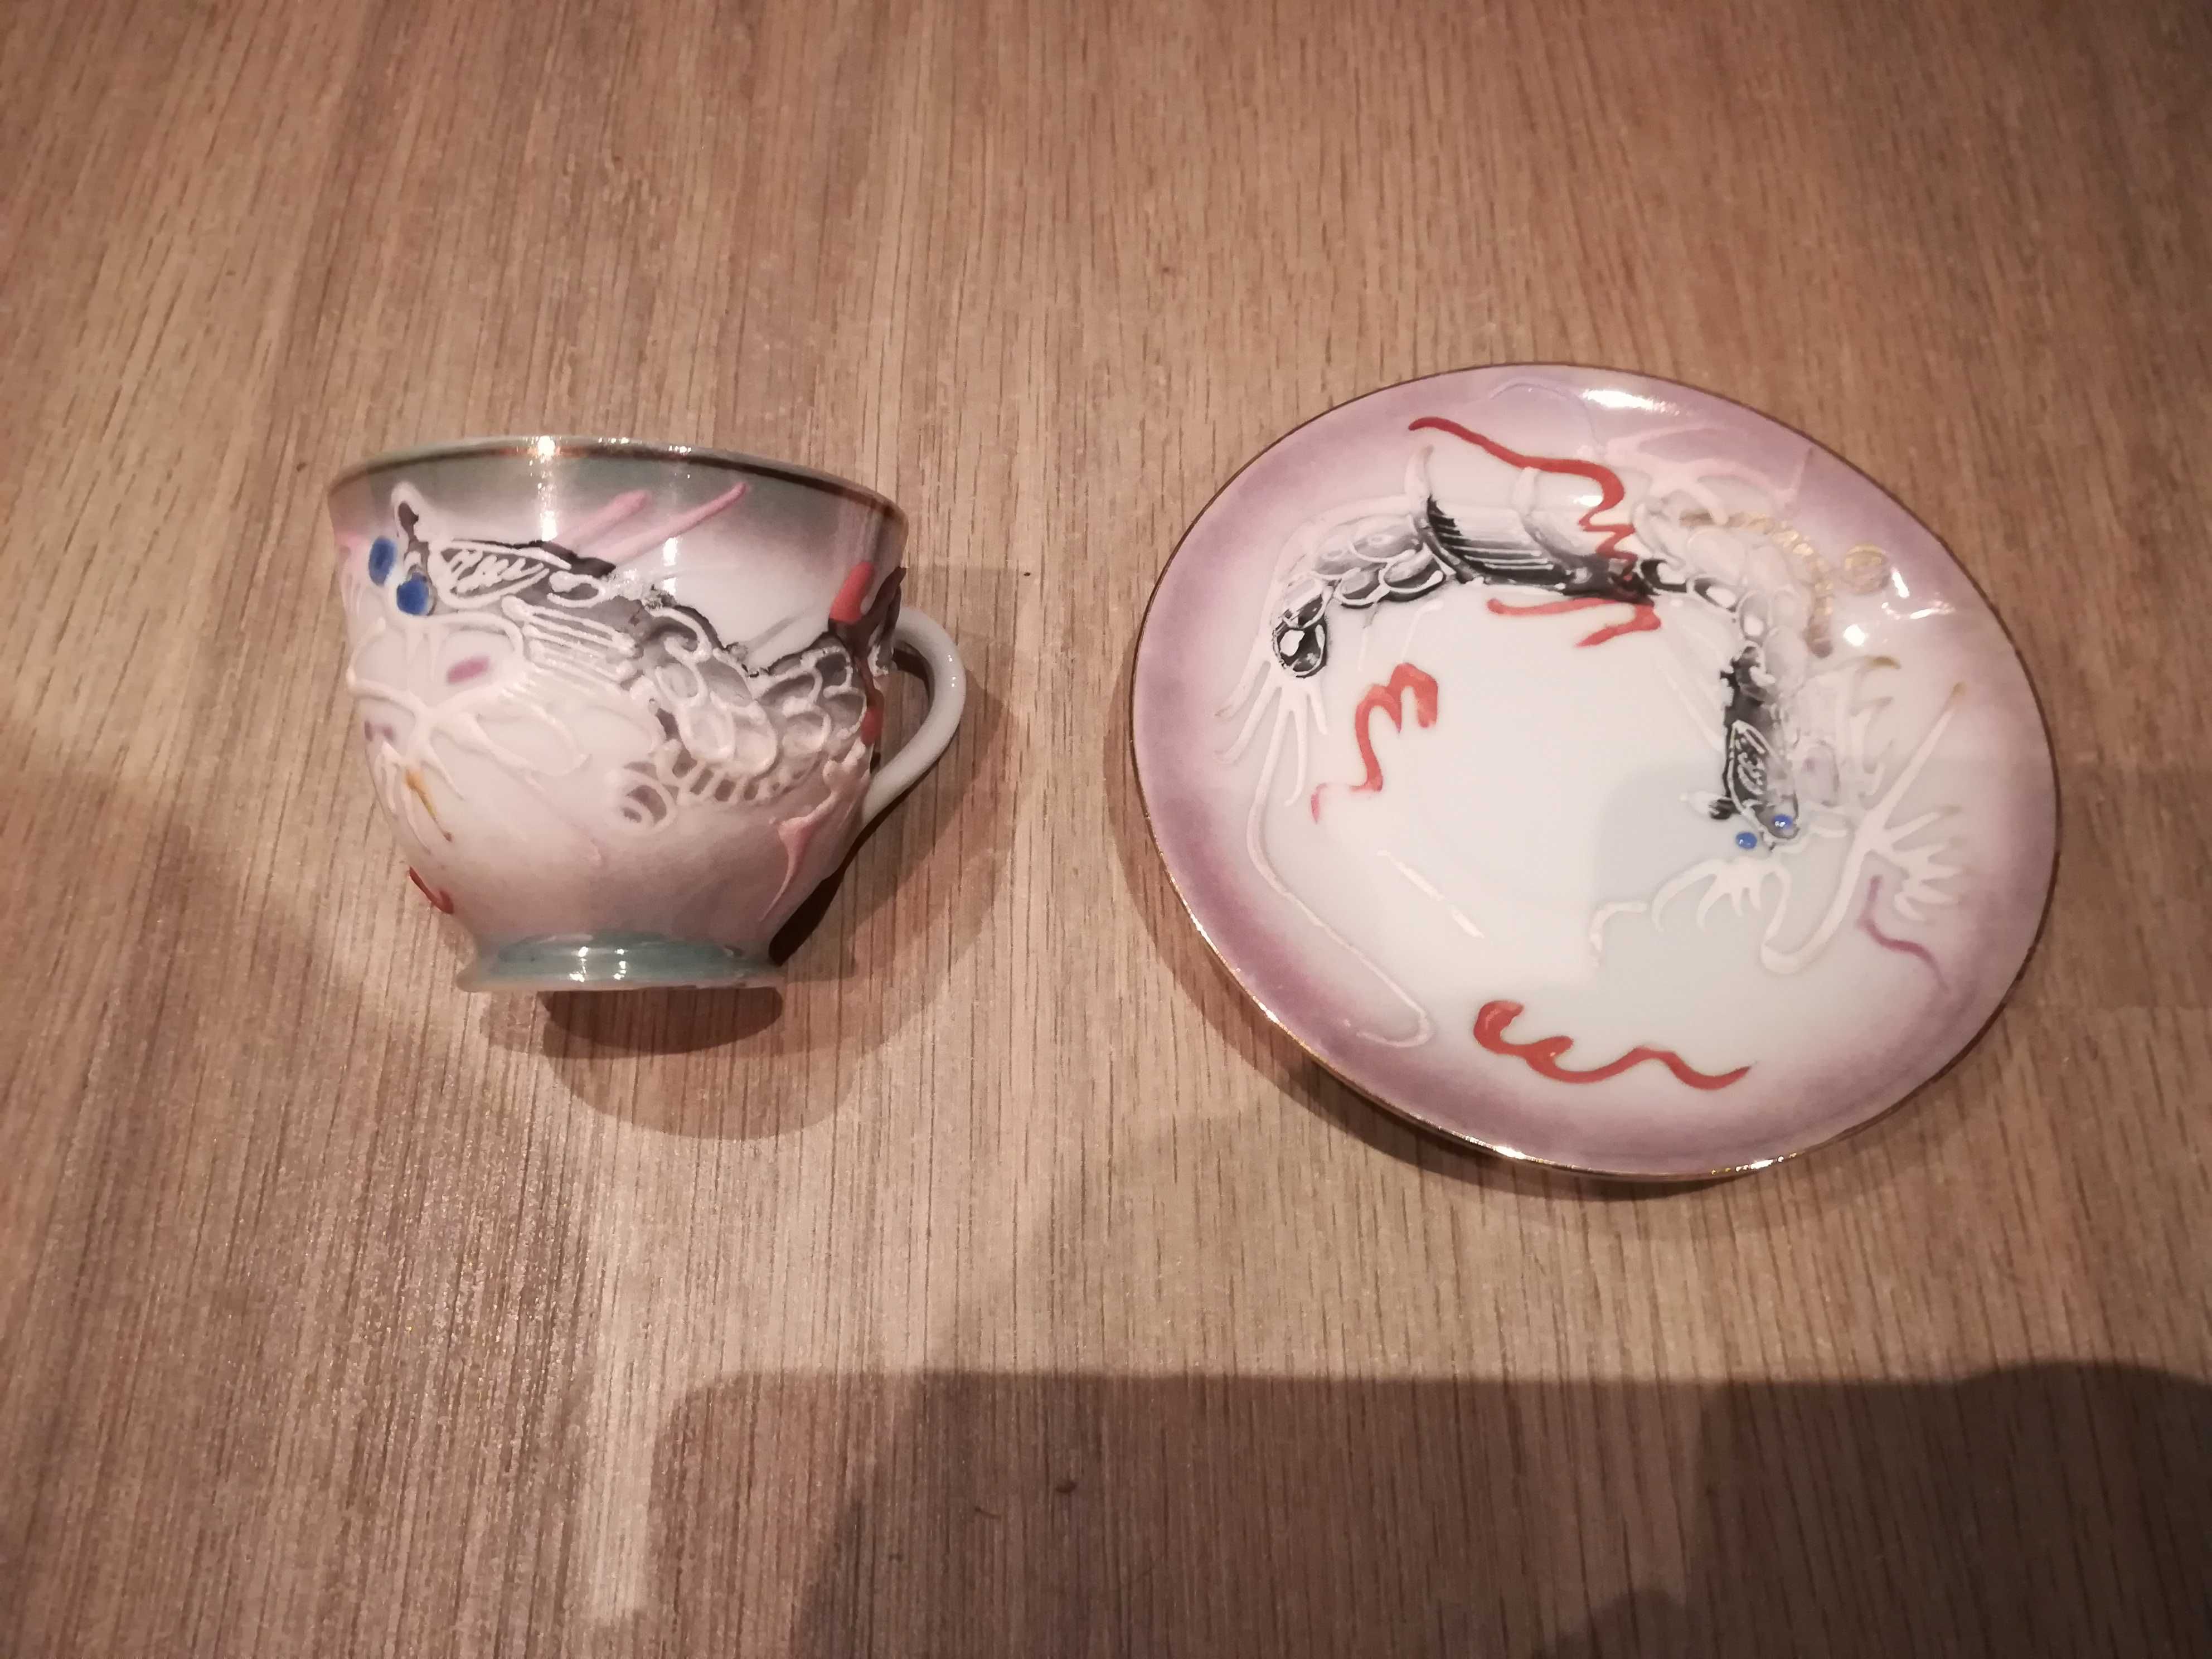 Conjunto de chá chinês em porcelana (com rosto no fundo da chávena)